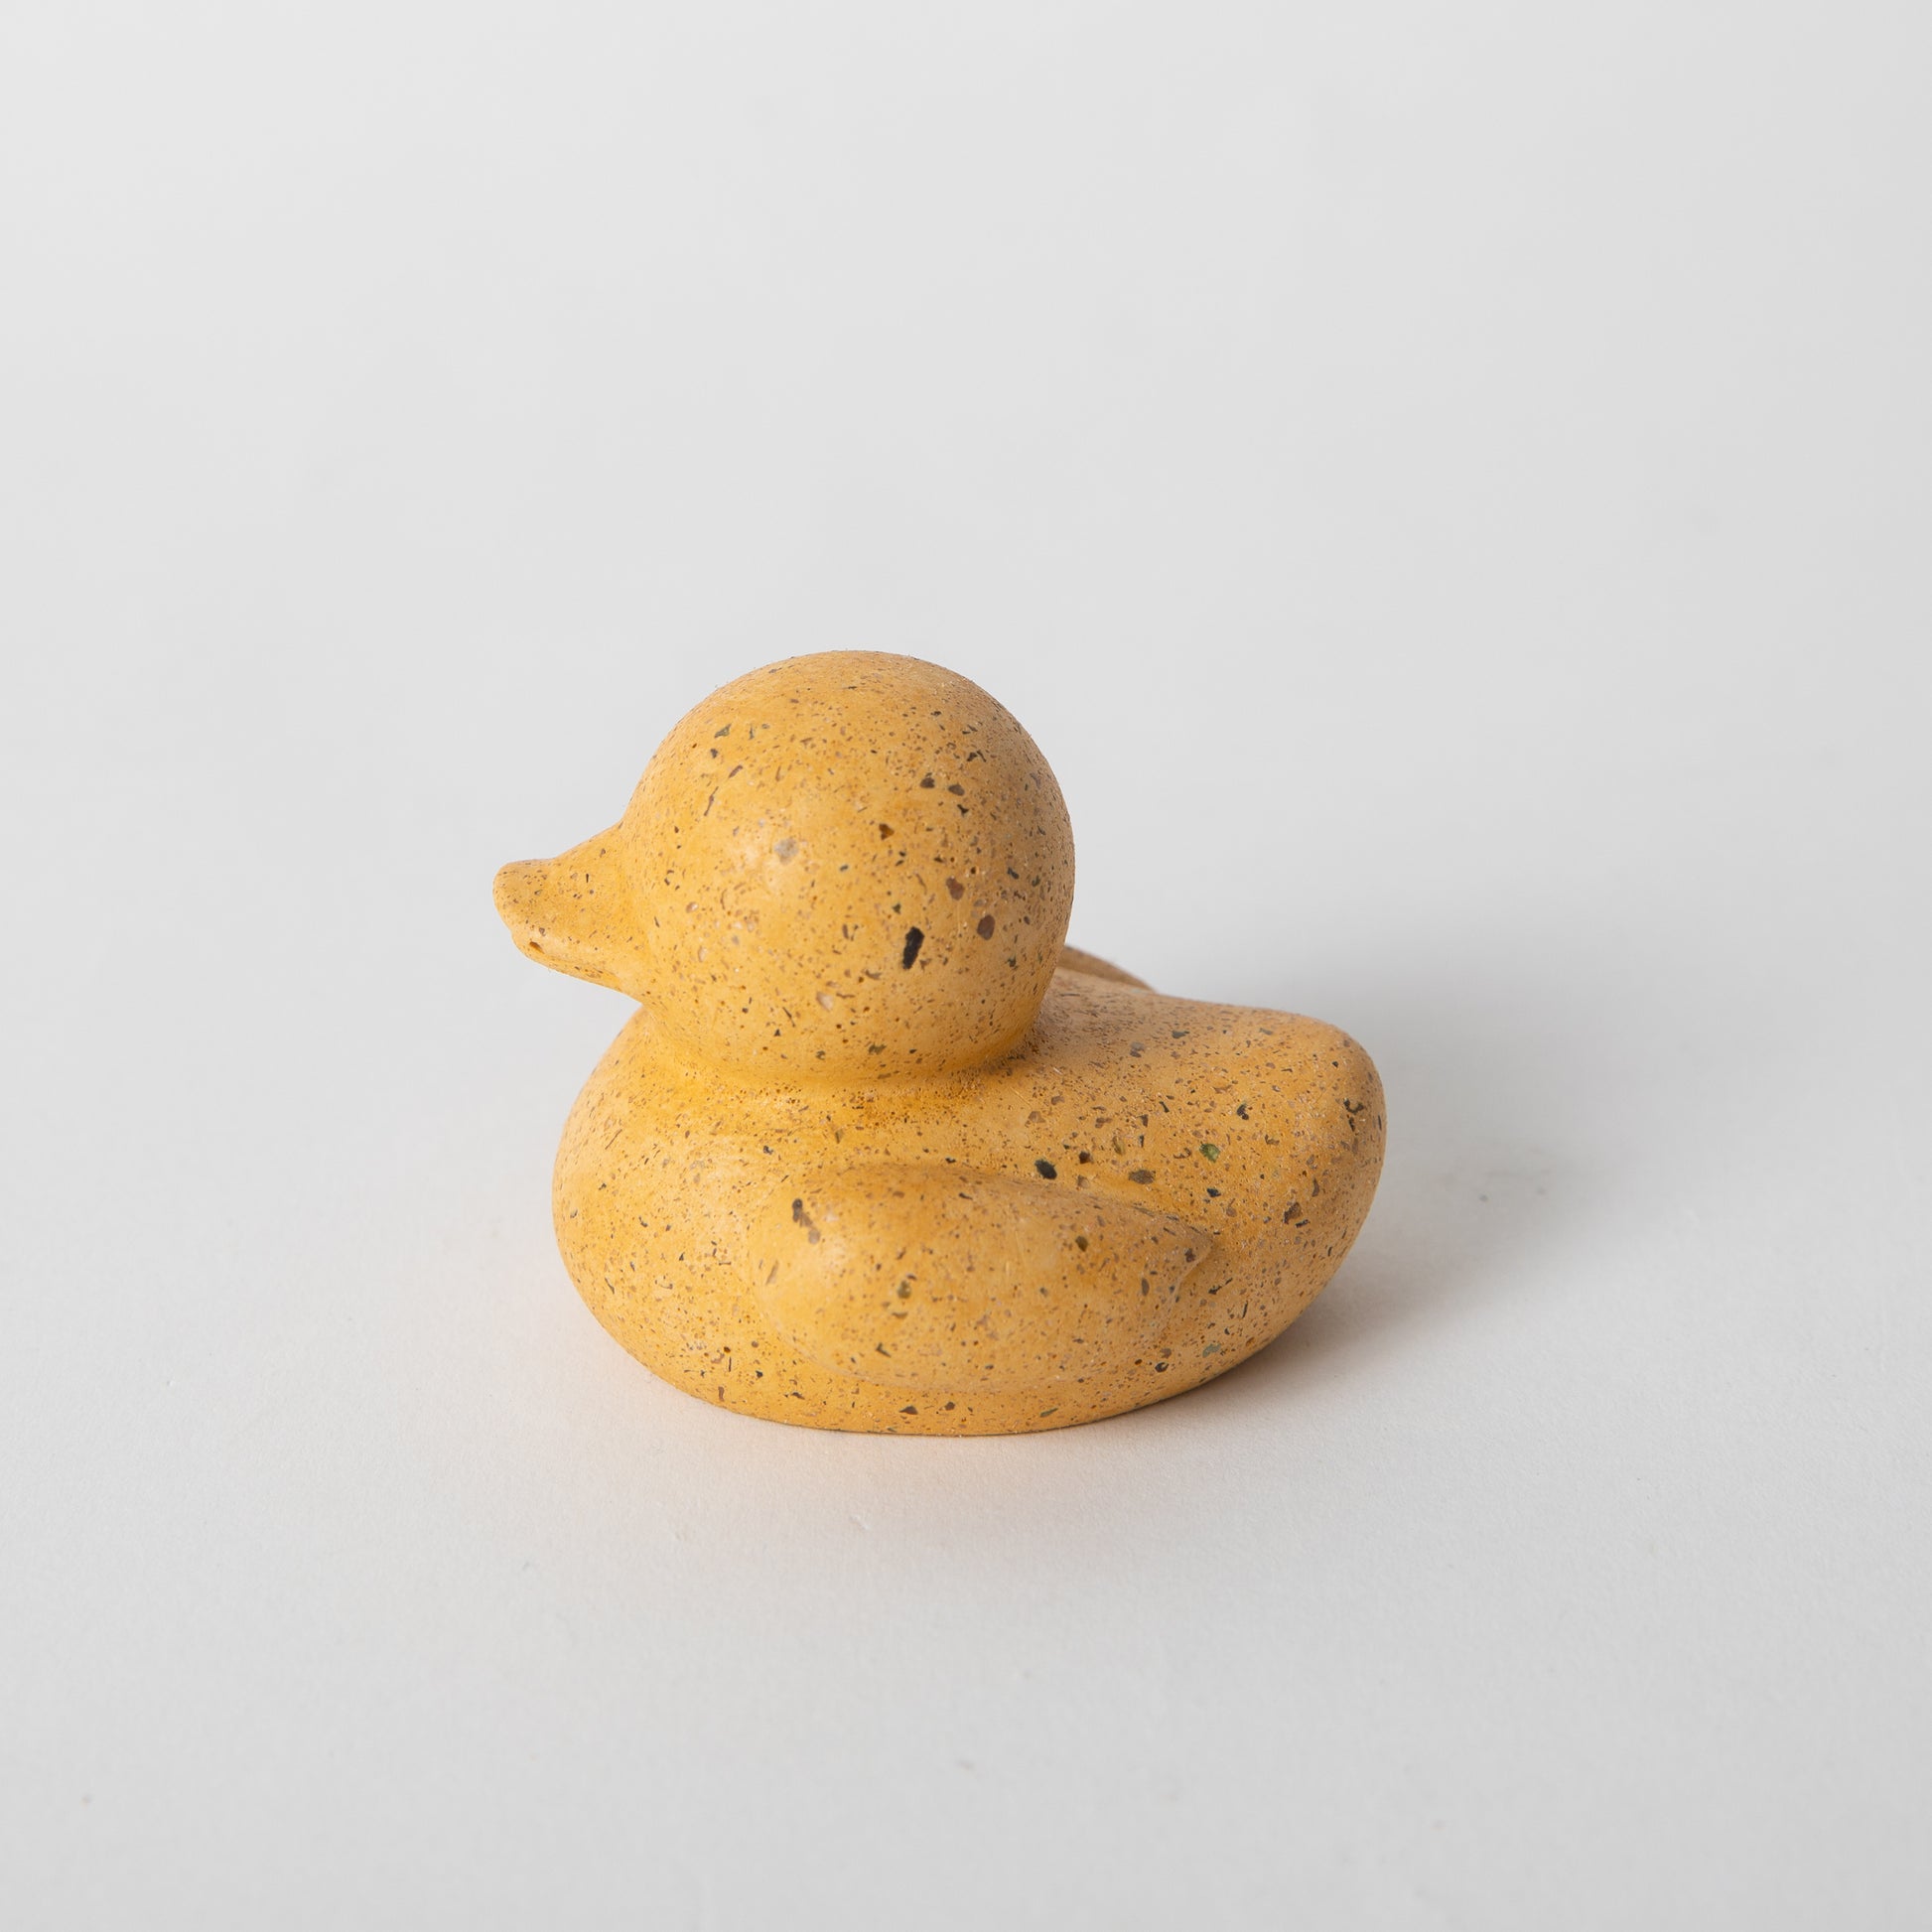 Mini “Rubber” Duckies